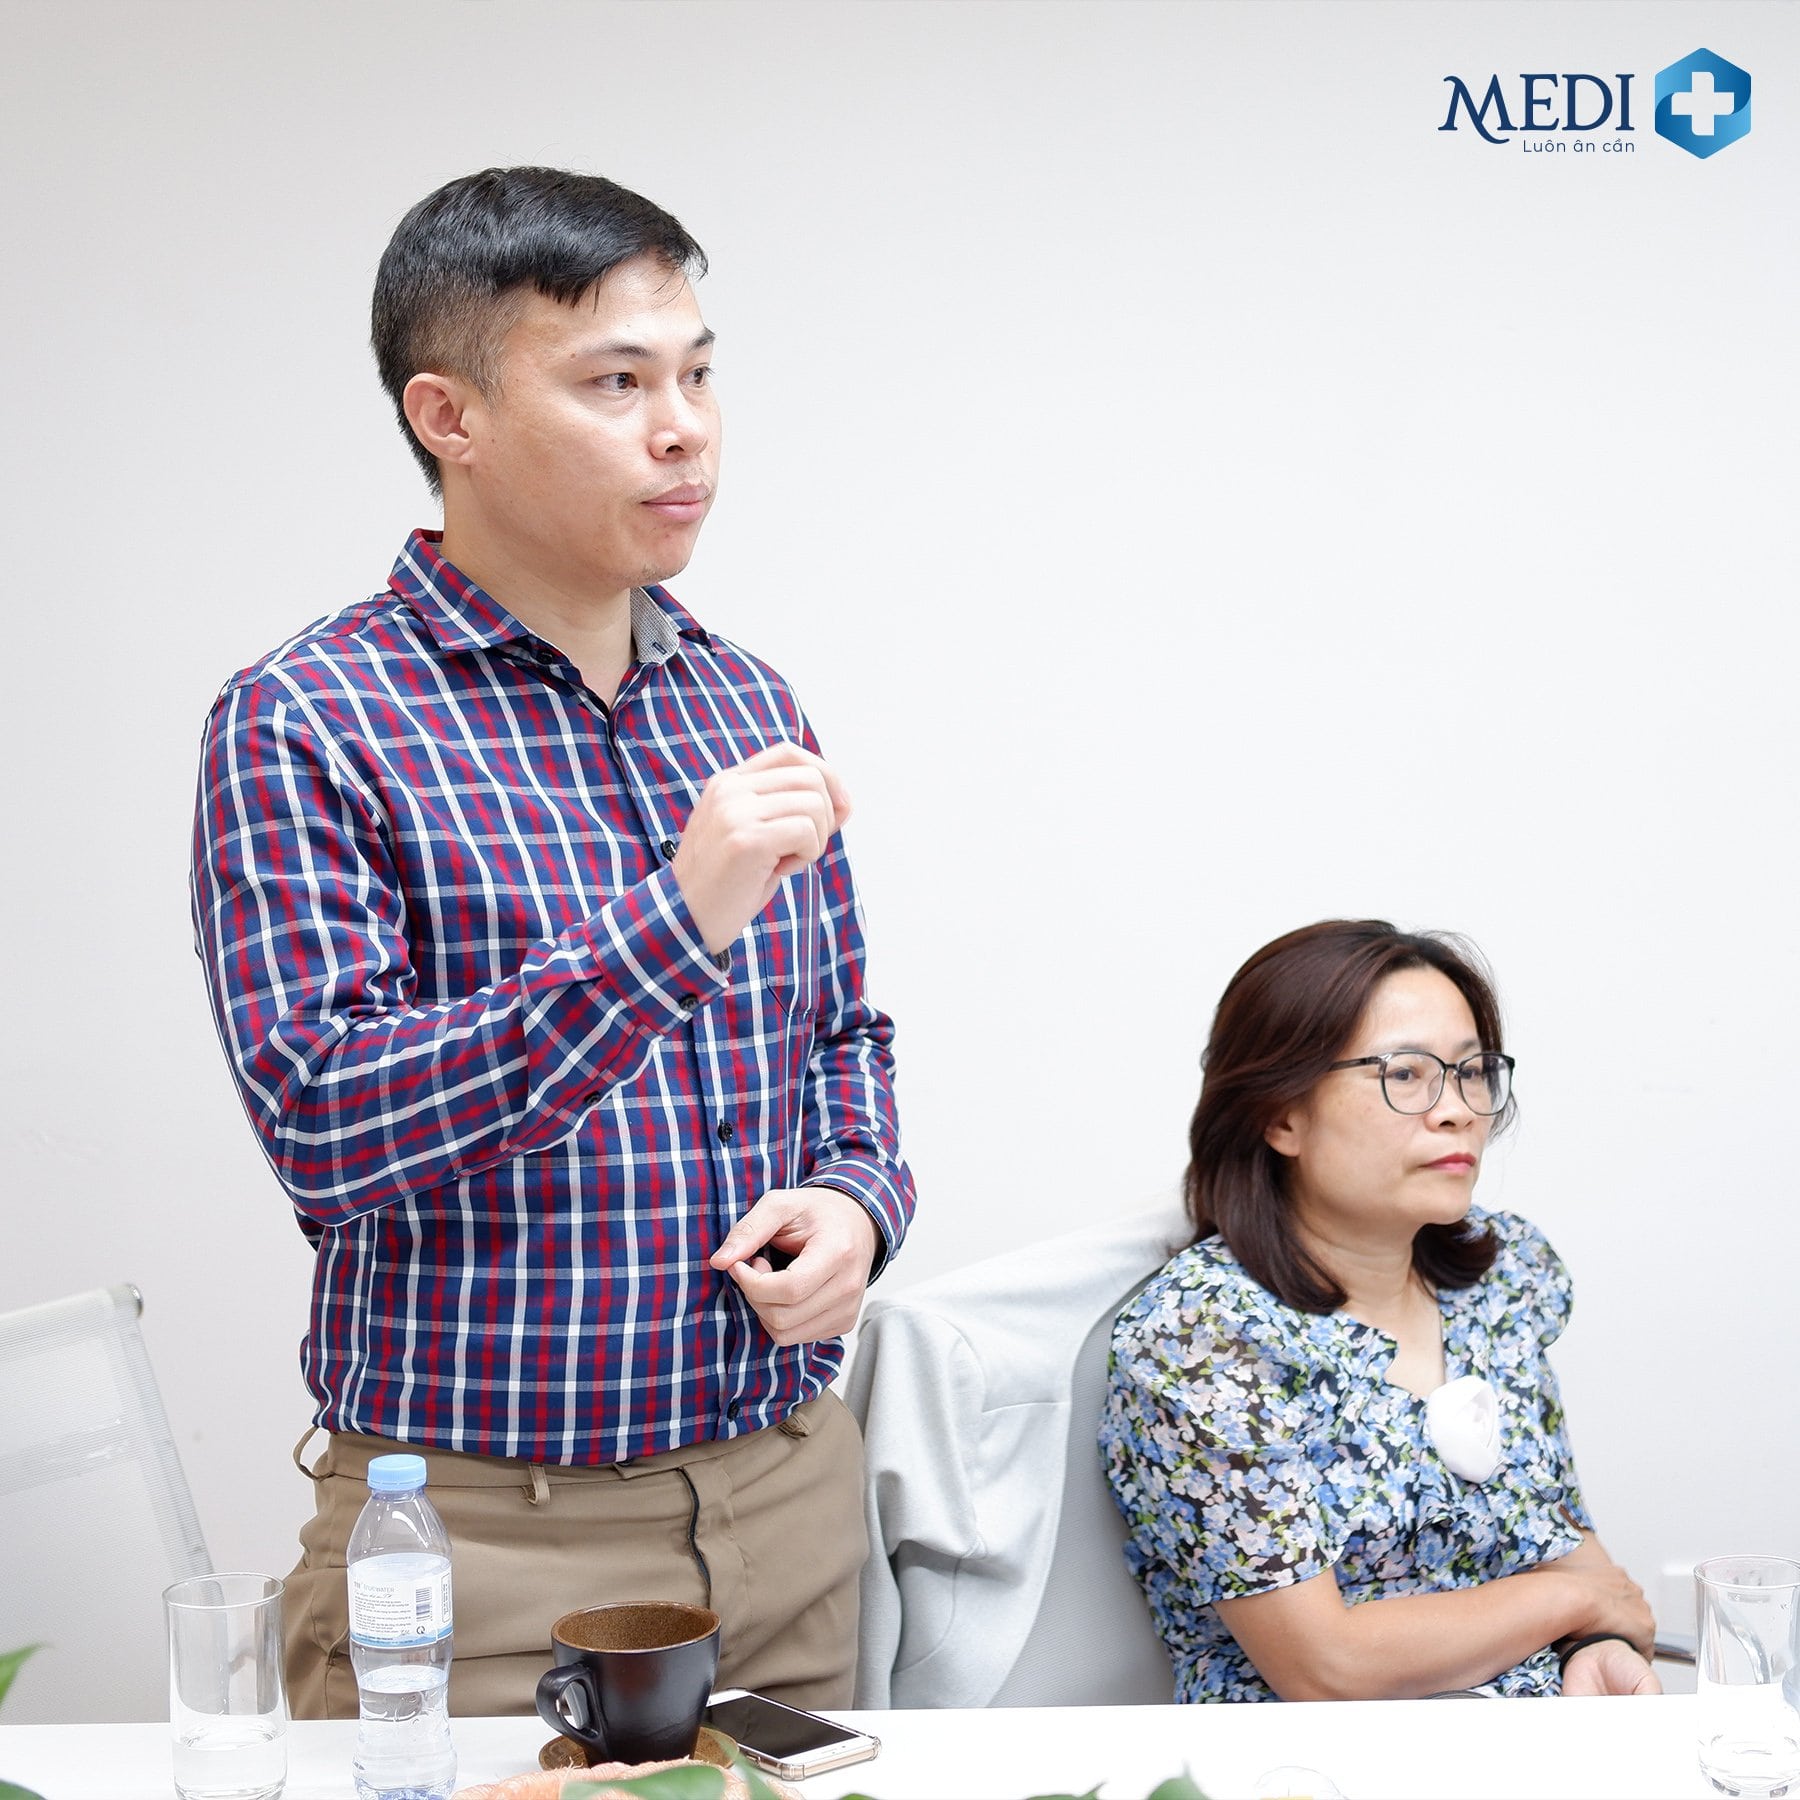 Các bác sĩ, chuyên gia trong lĩnh vực mạch tiến hành đặt câu hỏi, thảo luận về tính ứng dụng của kỹ thuật can thiệp mạch tại Việt Nam